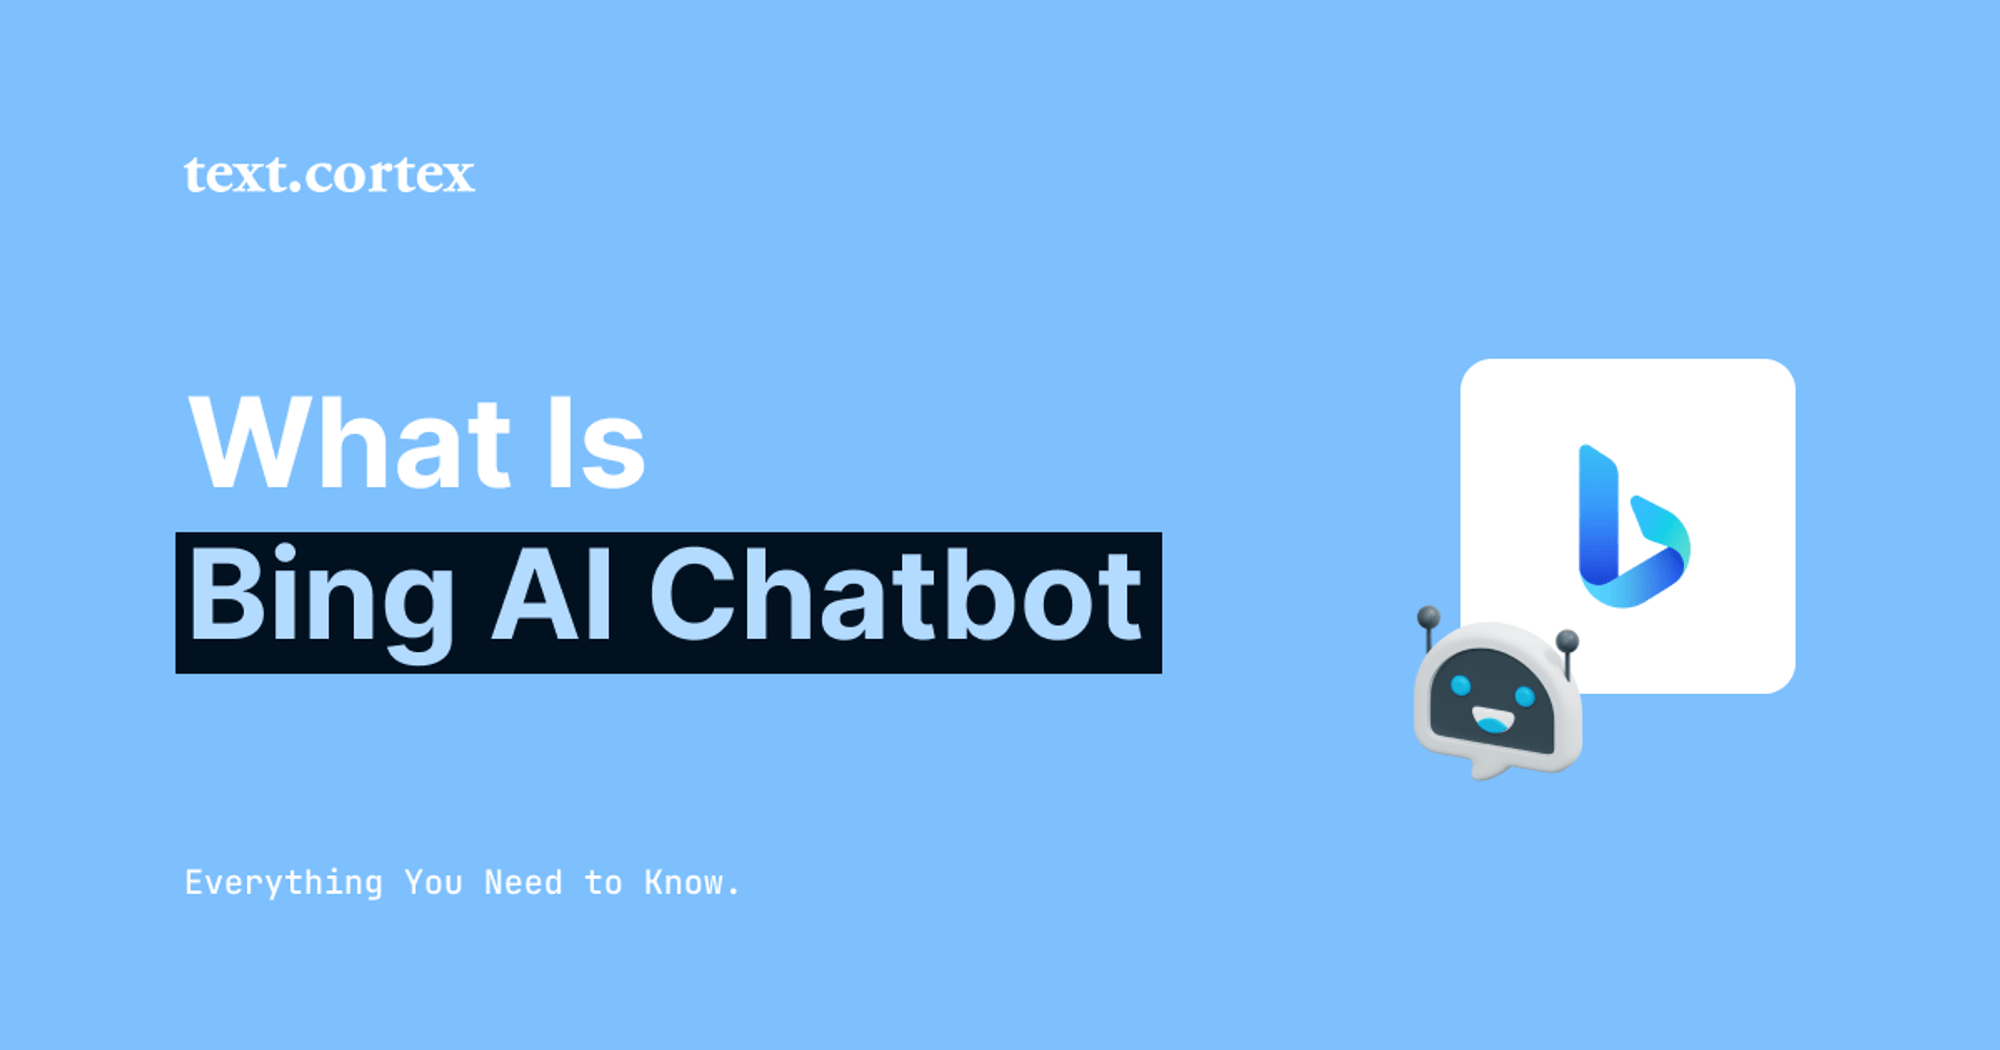 Qué es Bing AI Chatbot - Todo lo que necesitas saber